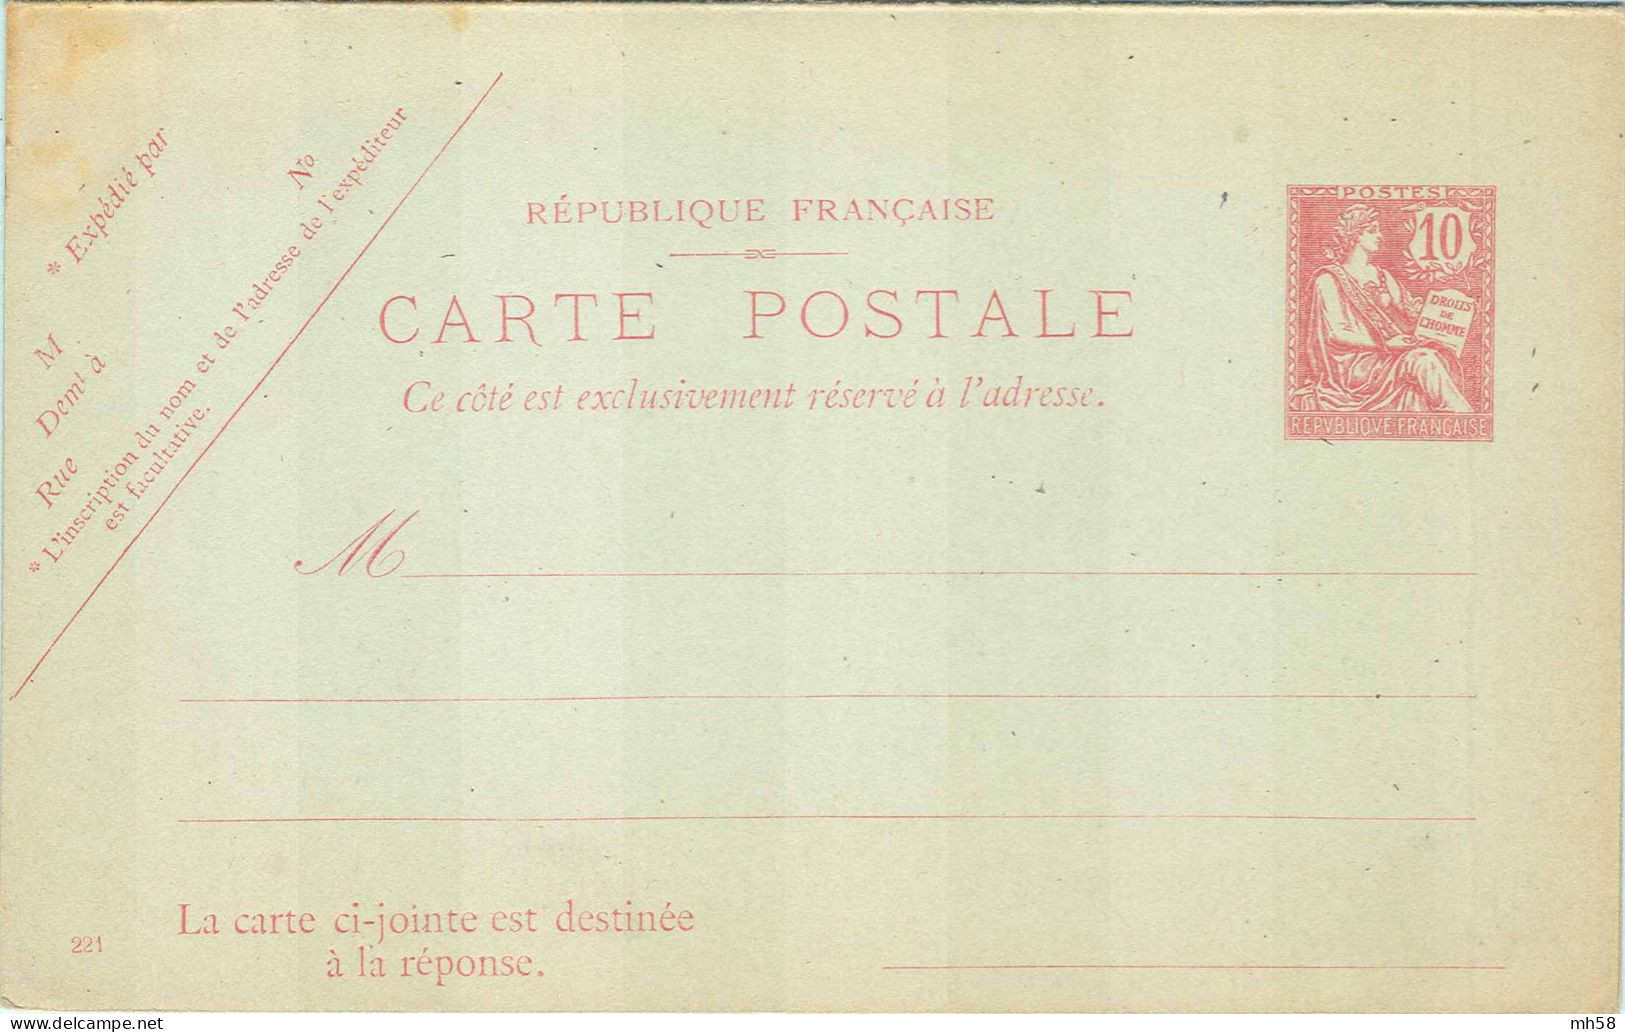 Entier FRANCE - Carte Réponse Payée Date 221 Neuf - 10c Mouchon Retouché Rose - Cartoline Postali E Su Commissione Privata TSC (ante 1995)